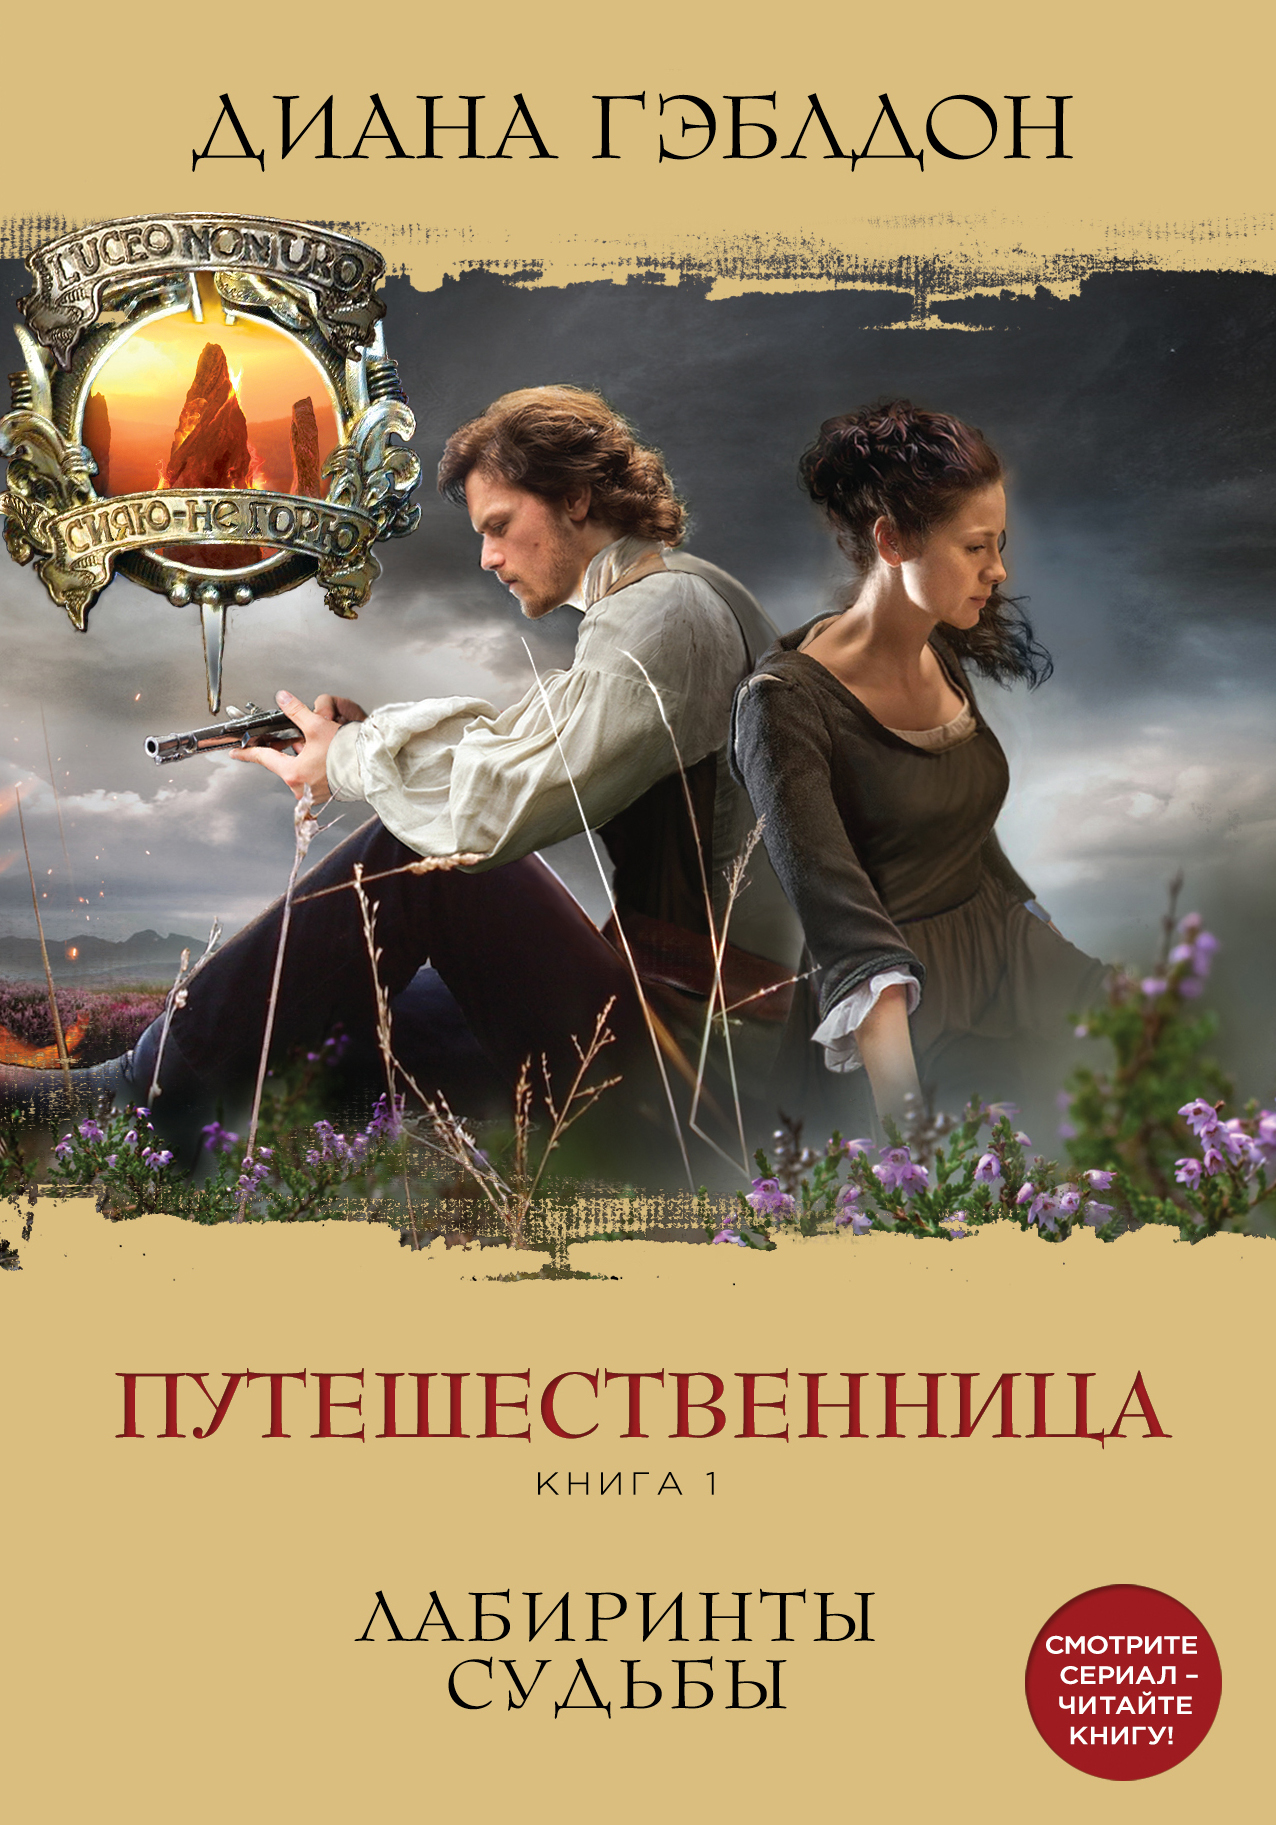 http://cdn.eksmo.ru/v2/ITD000000000635921/COVER/cover1.jpg